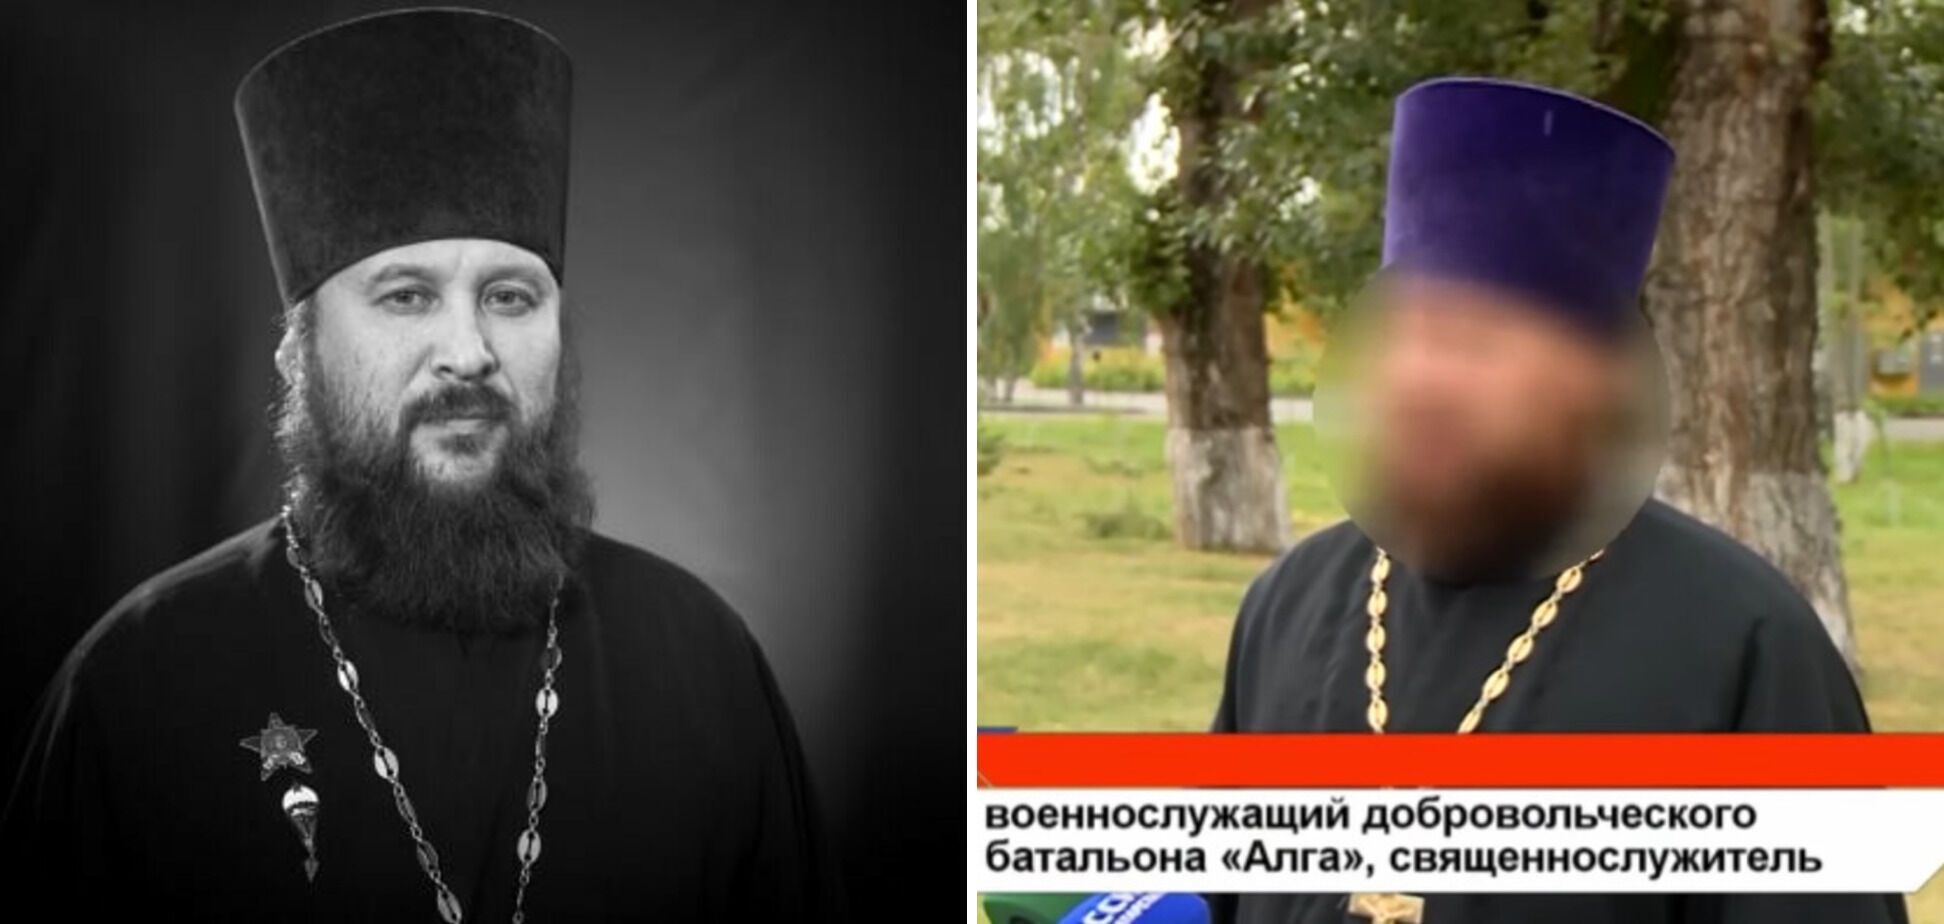 В Украине ликвидировали священника-боевика из Татарстана, которого вместе с "добробатом" перебросили воевать против ВСУ. Фото